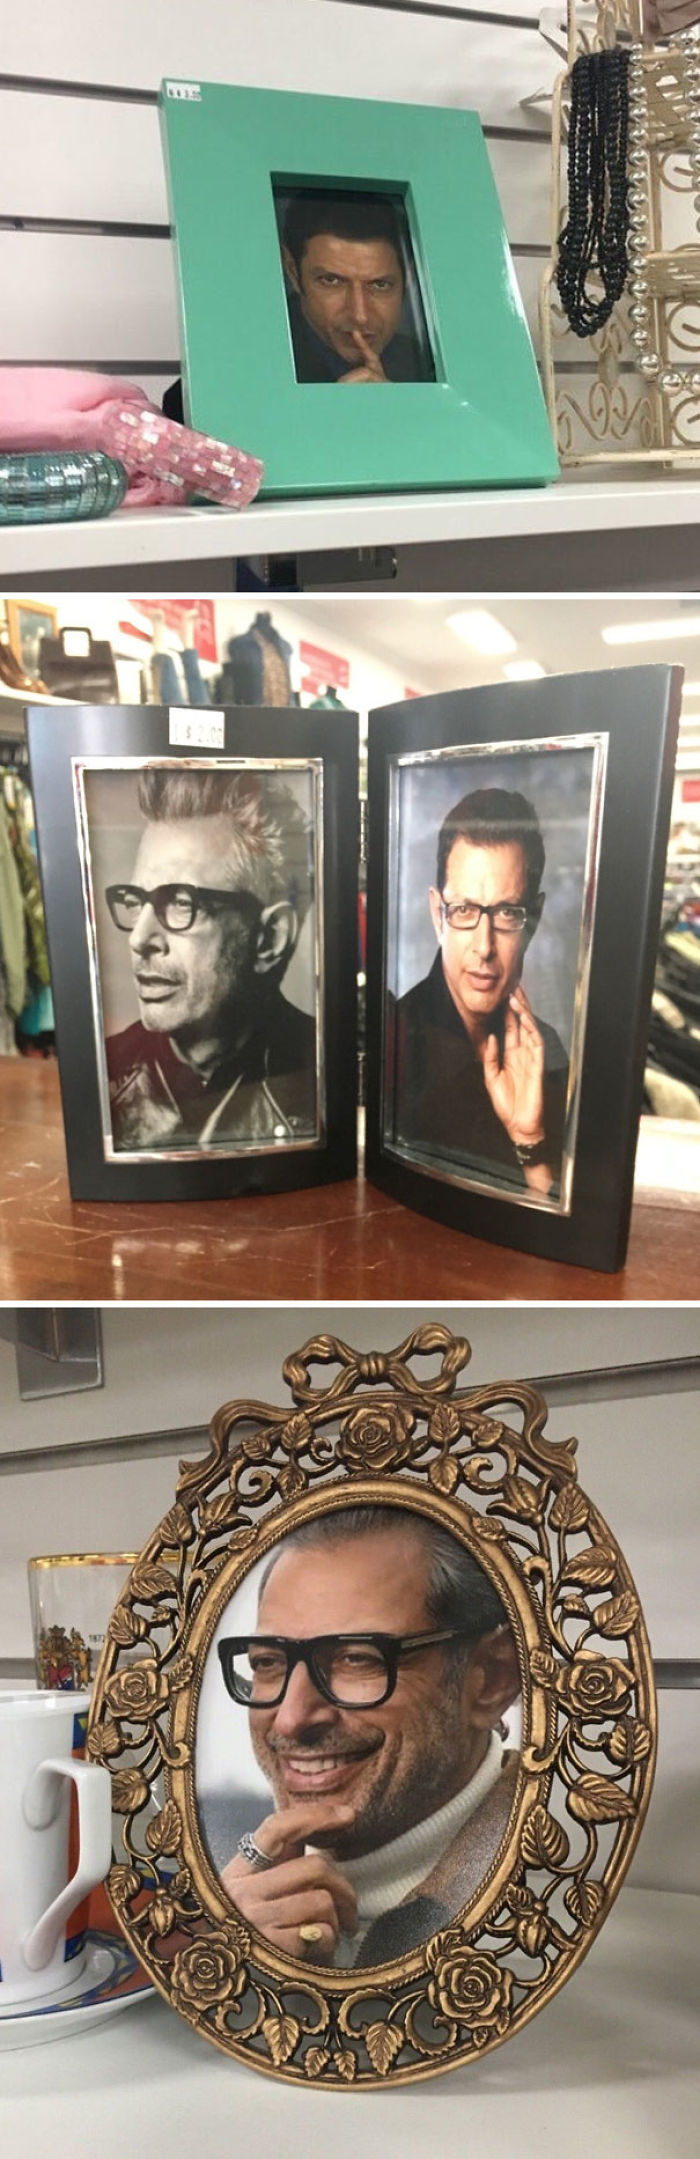 Uno de los que trabajan en la tienda de 2ª mano ha puesto a Jeff Goldblum en todos los marcos de fotos